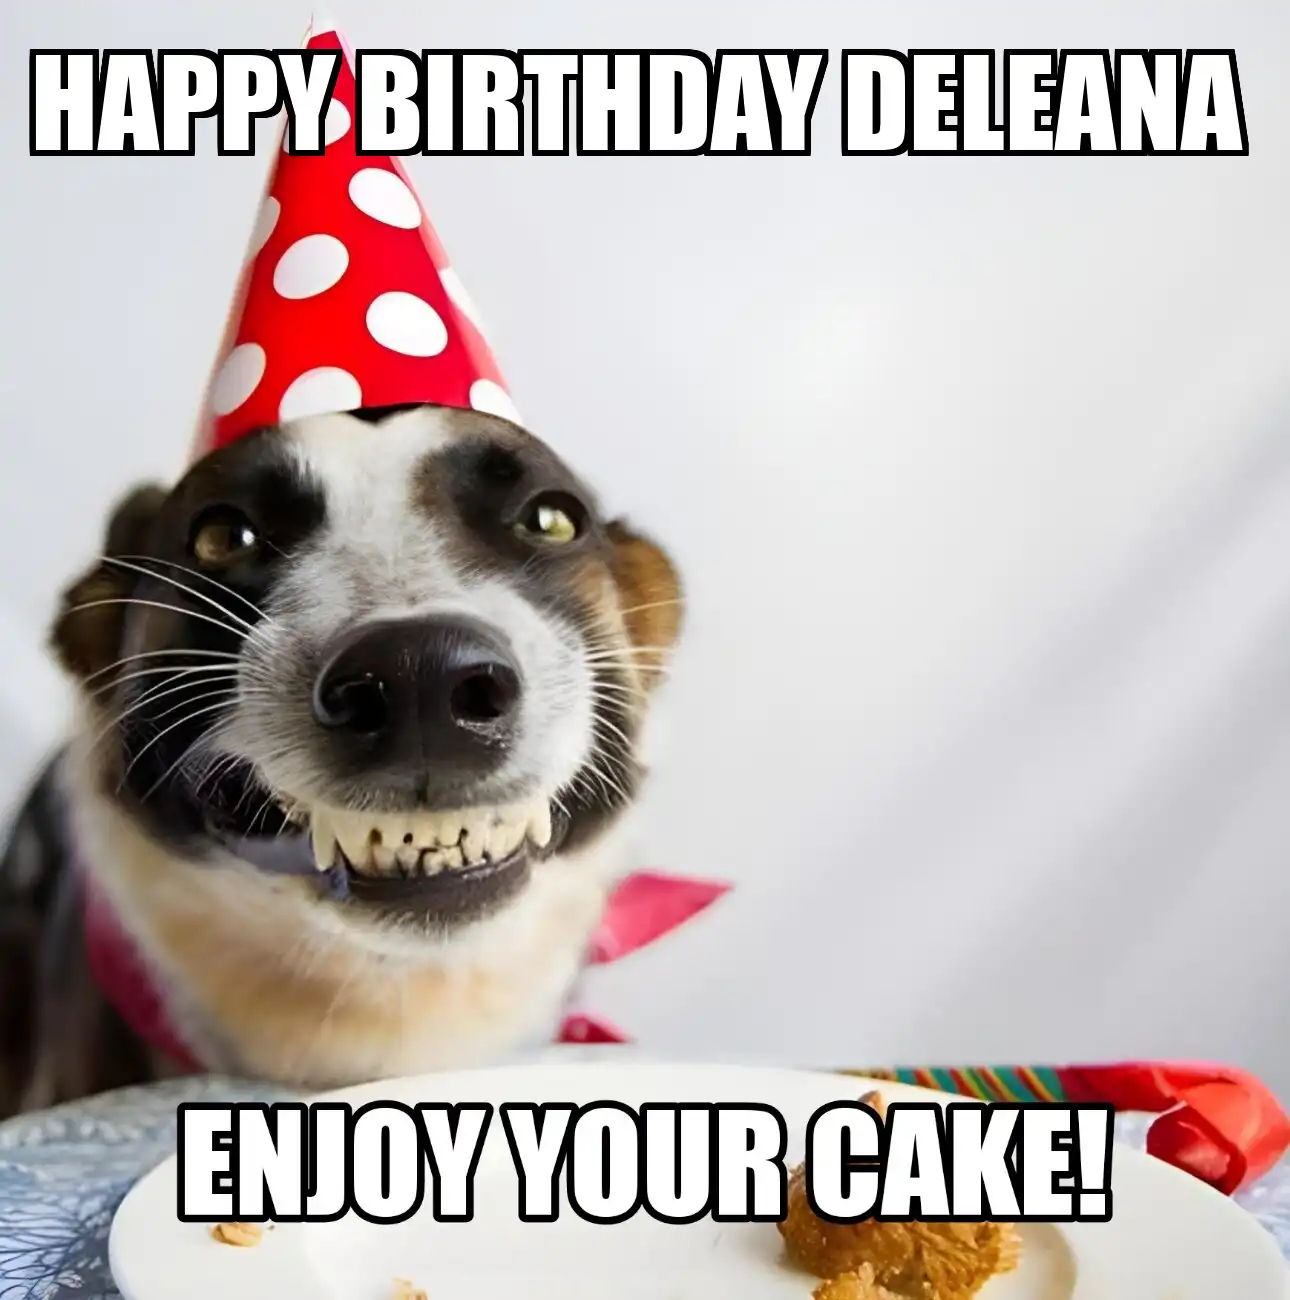 Happy Birthday Deleana Enjoy Your Cake Dog Meme